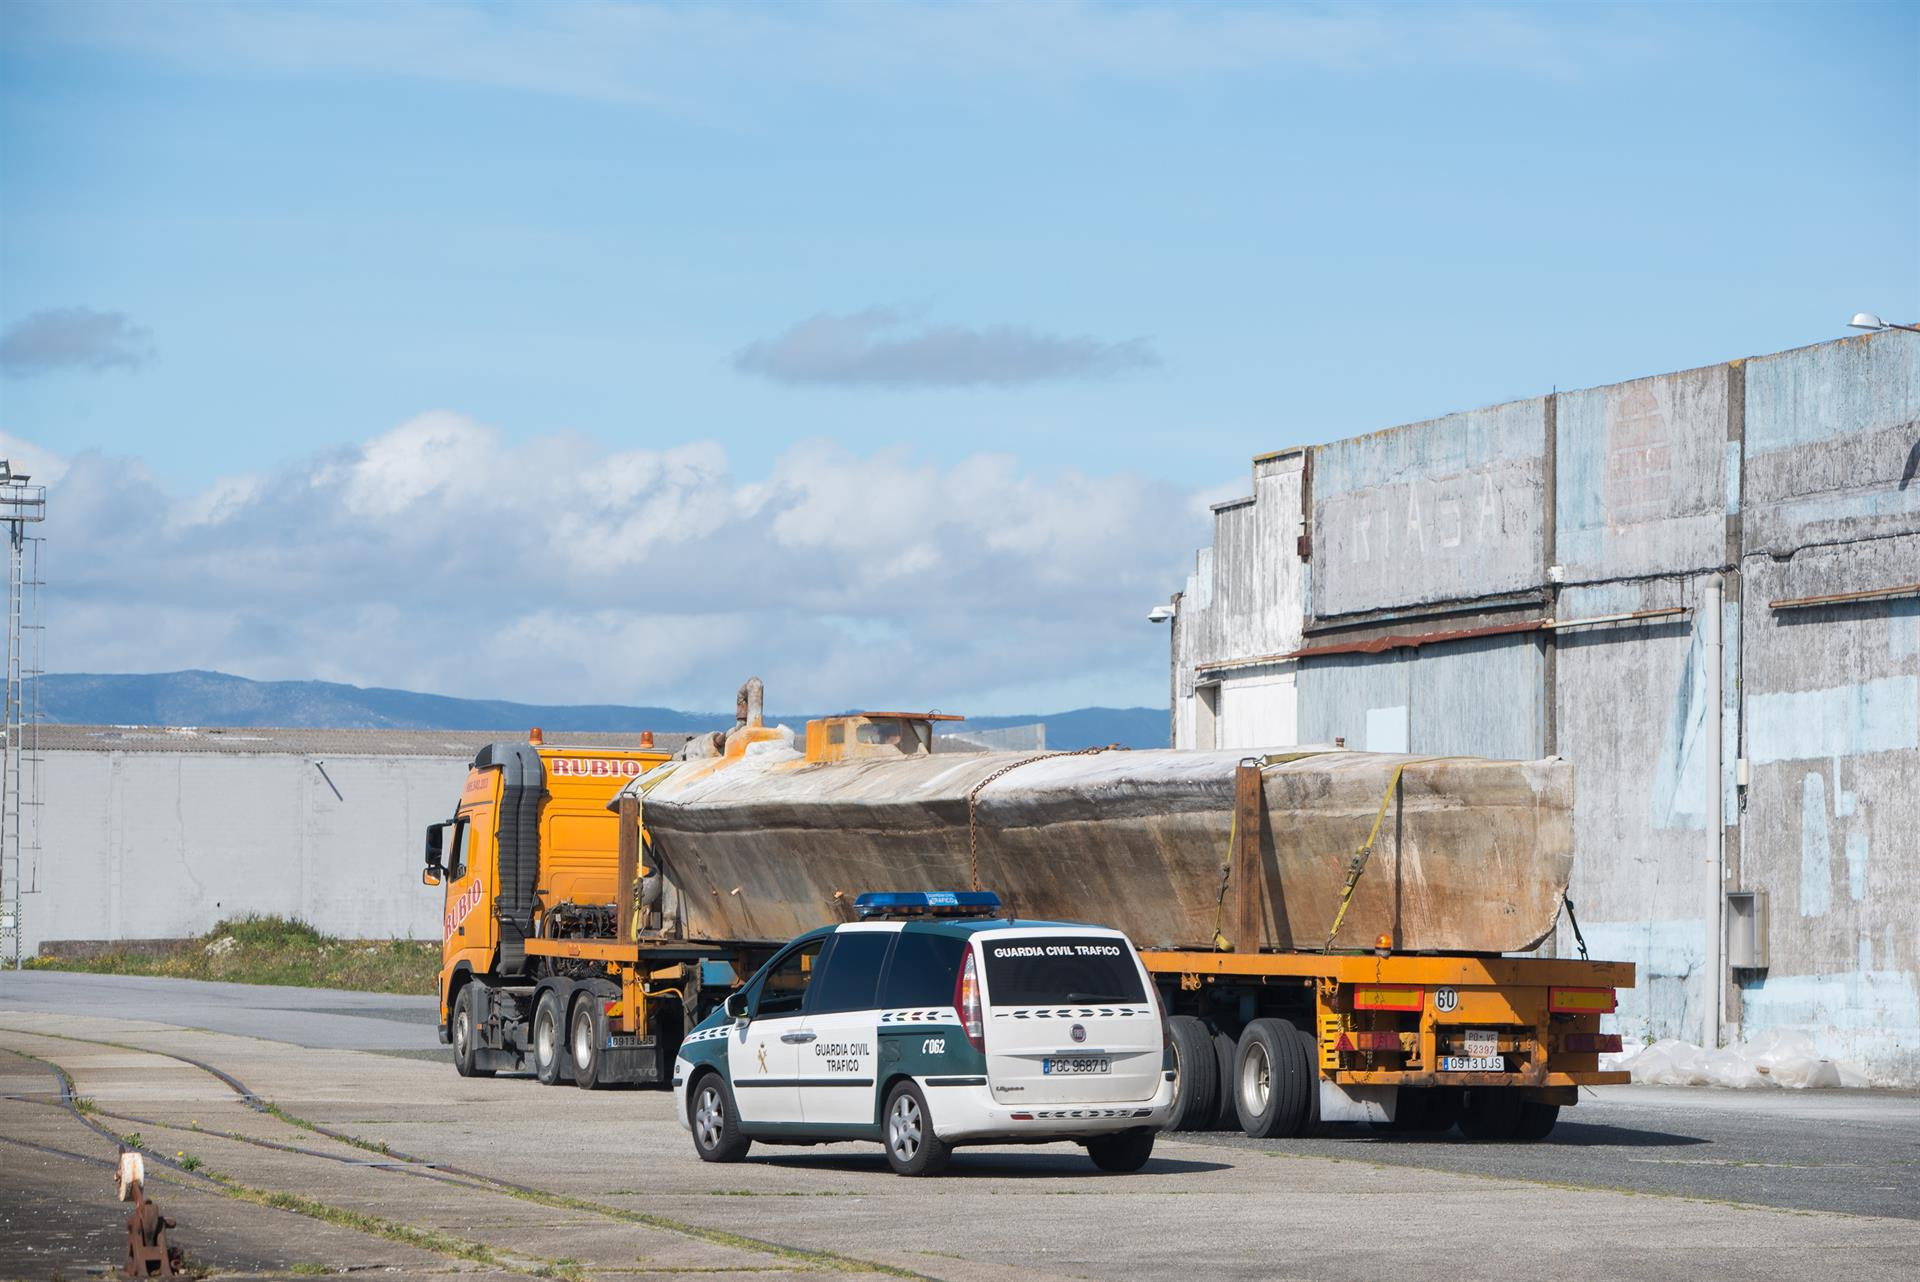 El narcosubmarino hallado en la ría de Arousa, a su llegada a un muelle del puerto de Vilagarcía (Pontevedra), en un transporte especial escoltado por la Guardia Civil. Foto: Gustavo de la Paz / EP